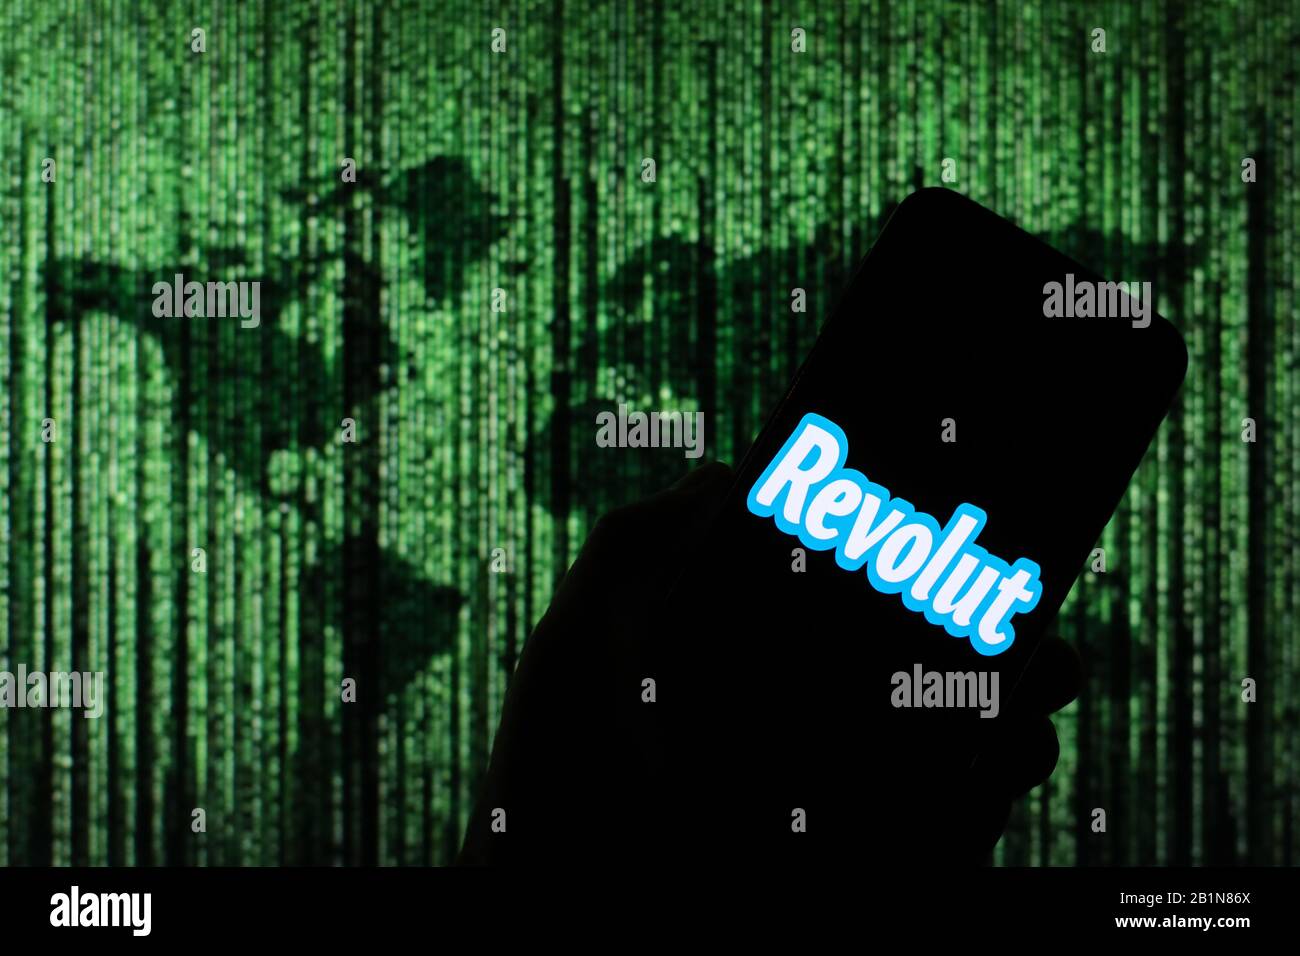 Revolut Online Money Exchange Firmenlogo auf dem Smartphone-Bildschirm mit Matrix-ähnlicher Weltkarte, die im Hintergrund verschwommen zu sehen ist Stockfoto